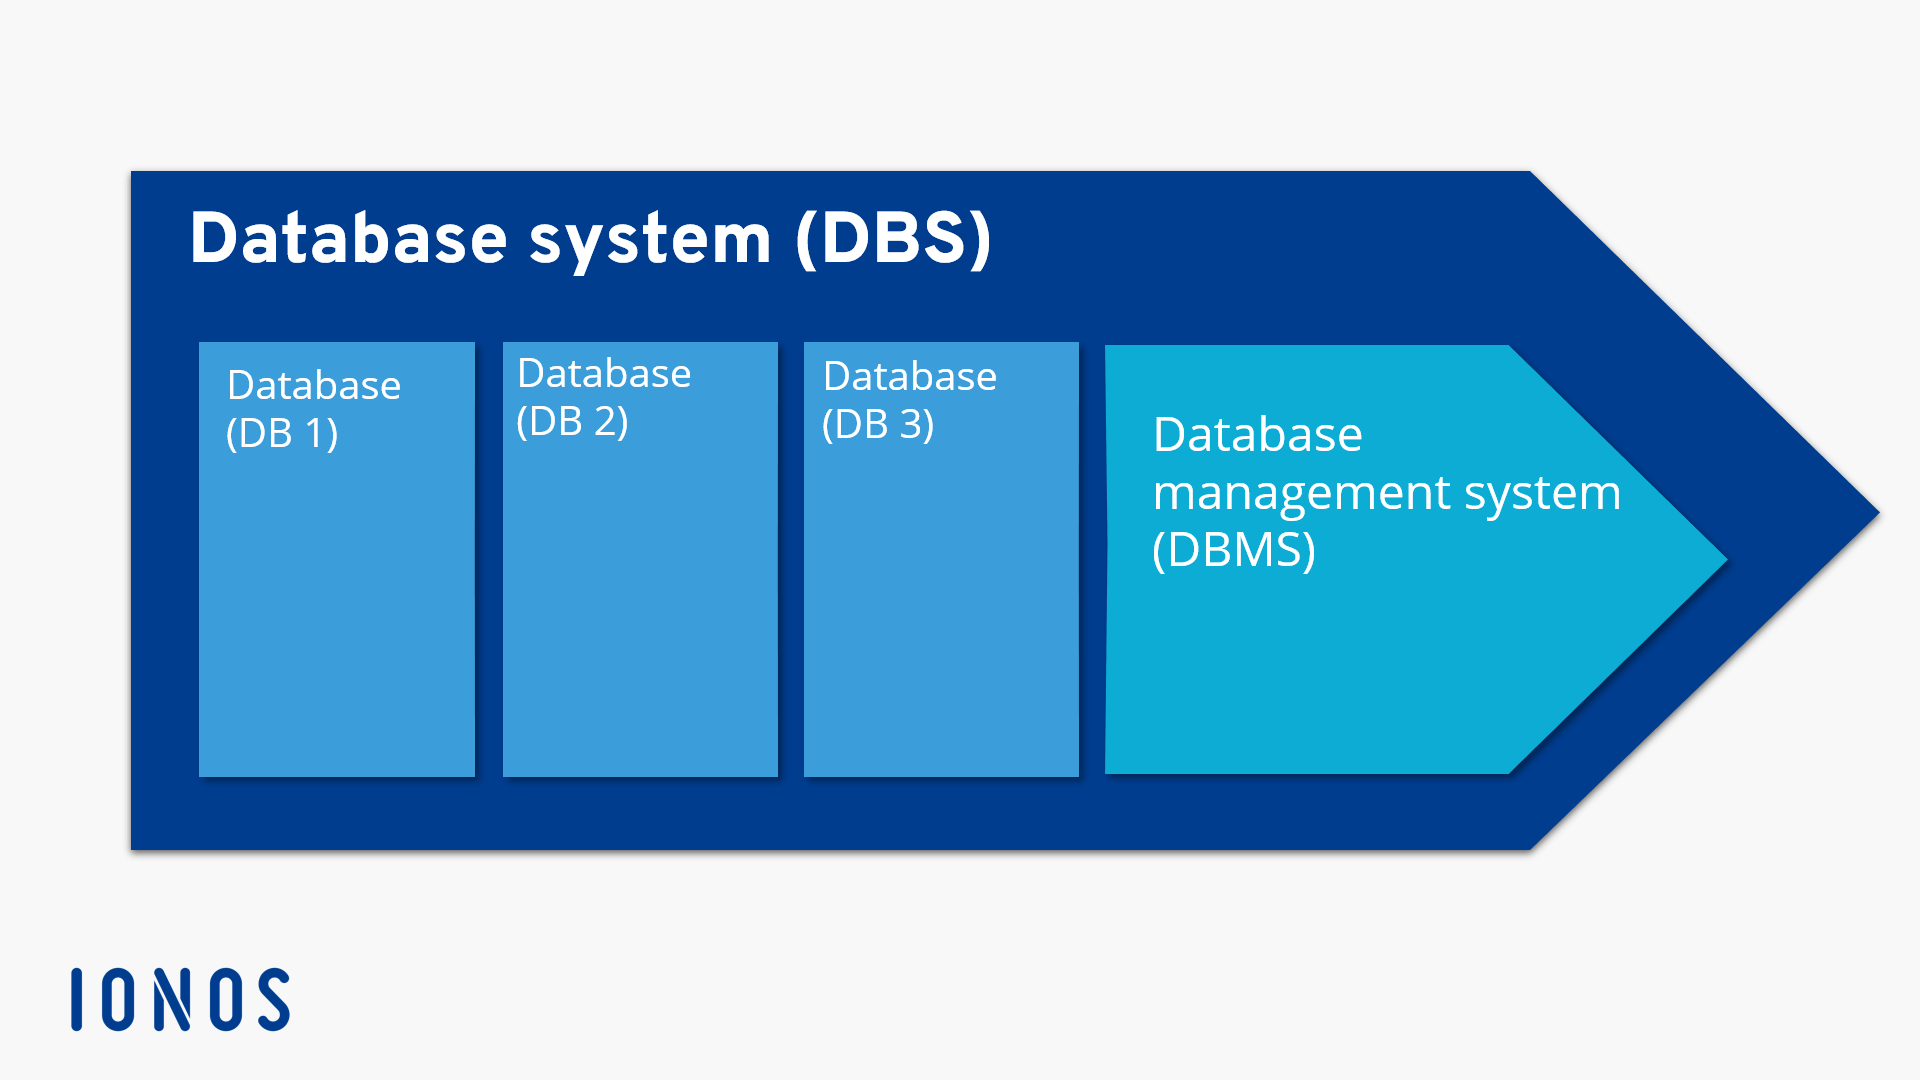 Représentation schématique d’un système de gestion de bases de données avec trois bases de données